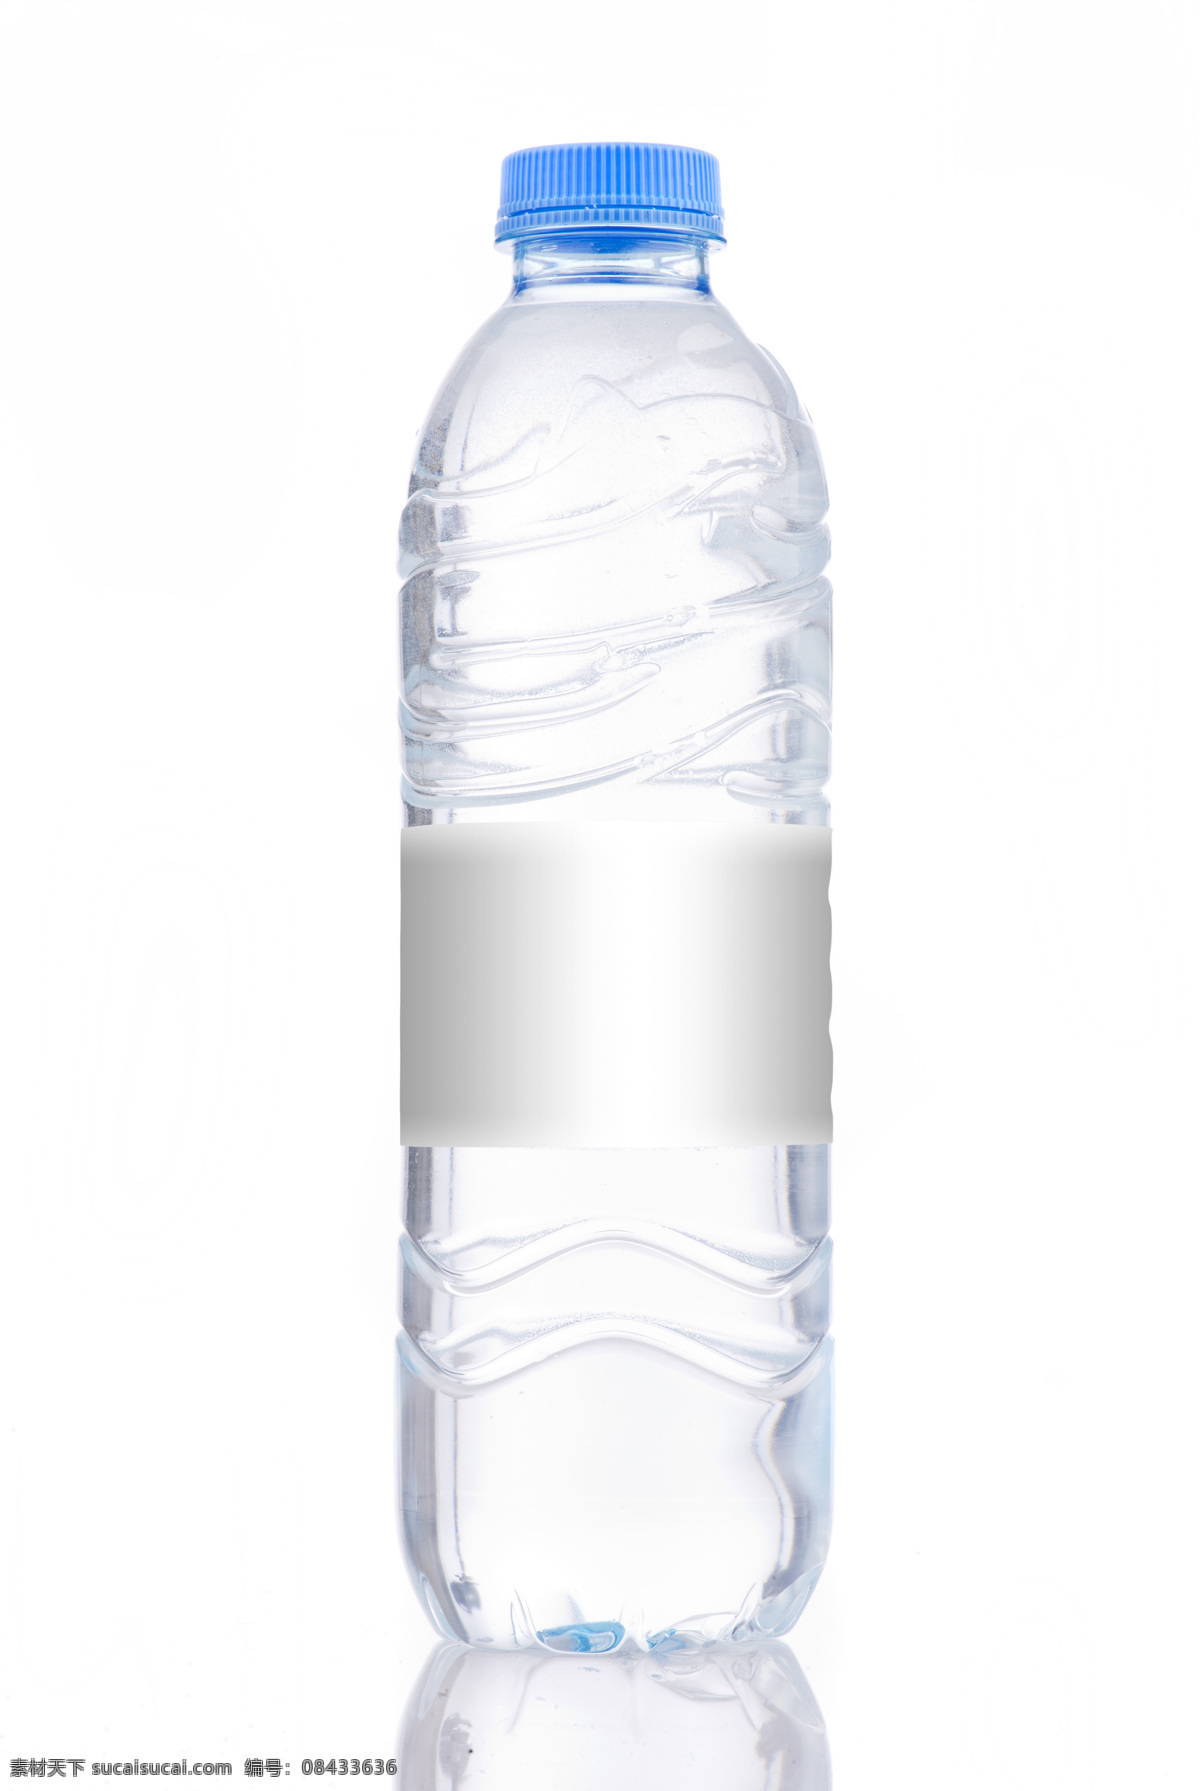 矿泉水瓶 包装设计 矿泉水 水瓶 瓶子 包装模板 空白包装背景 产品包装 其他类别 生活百科 白色